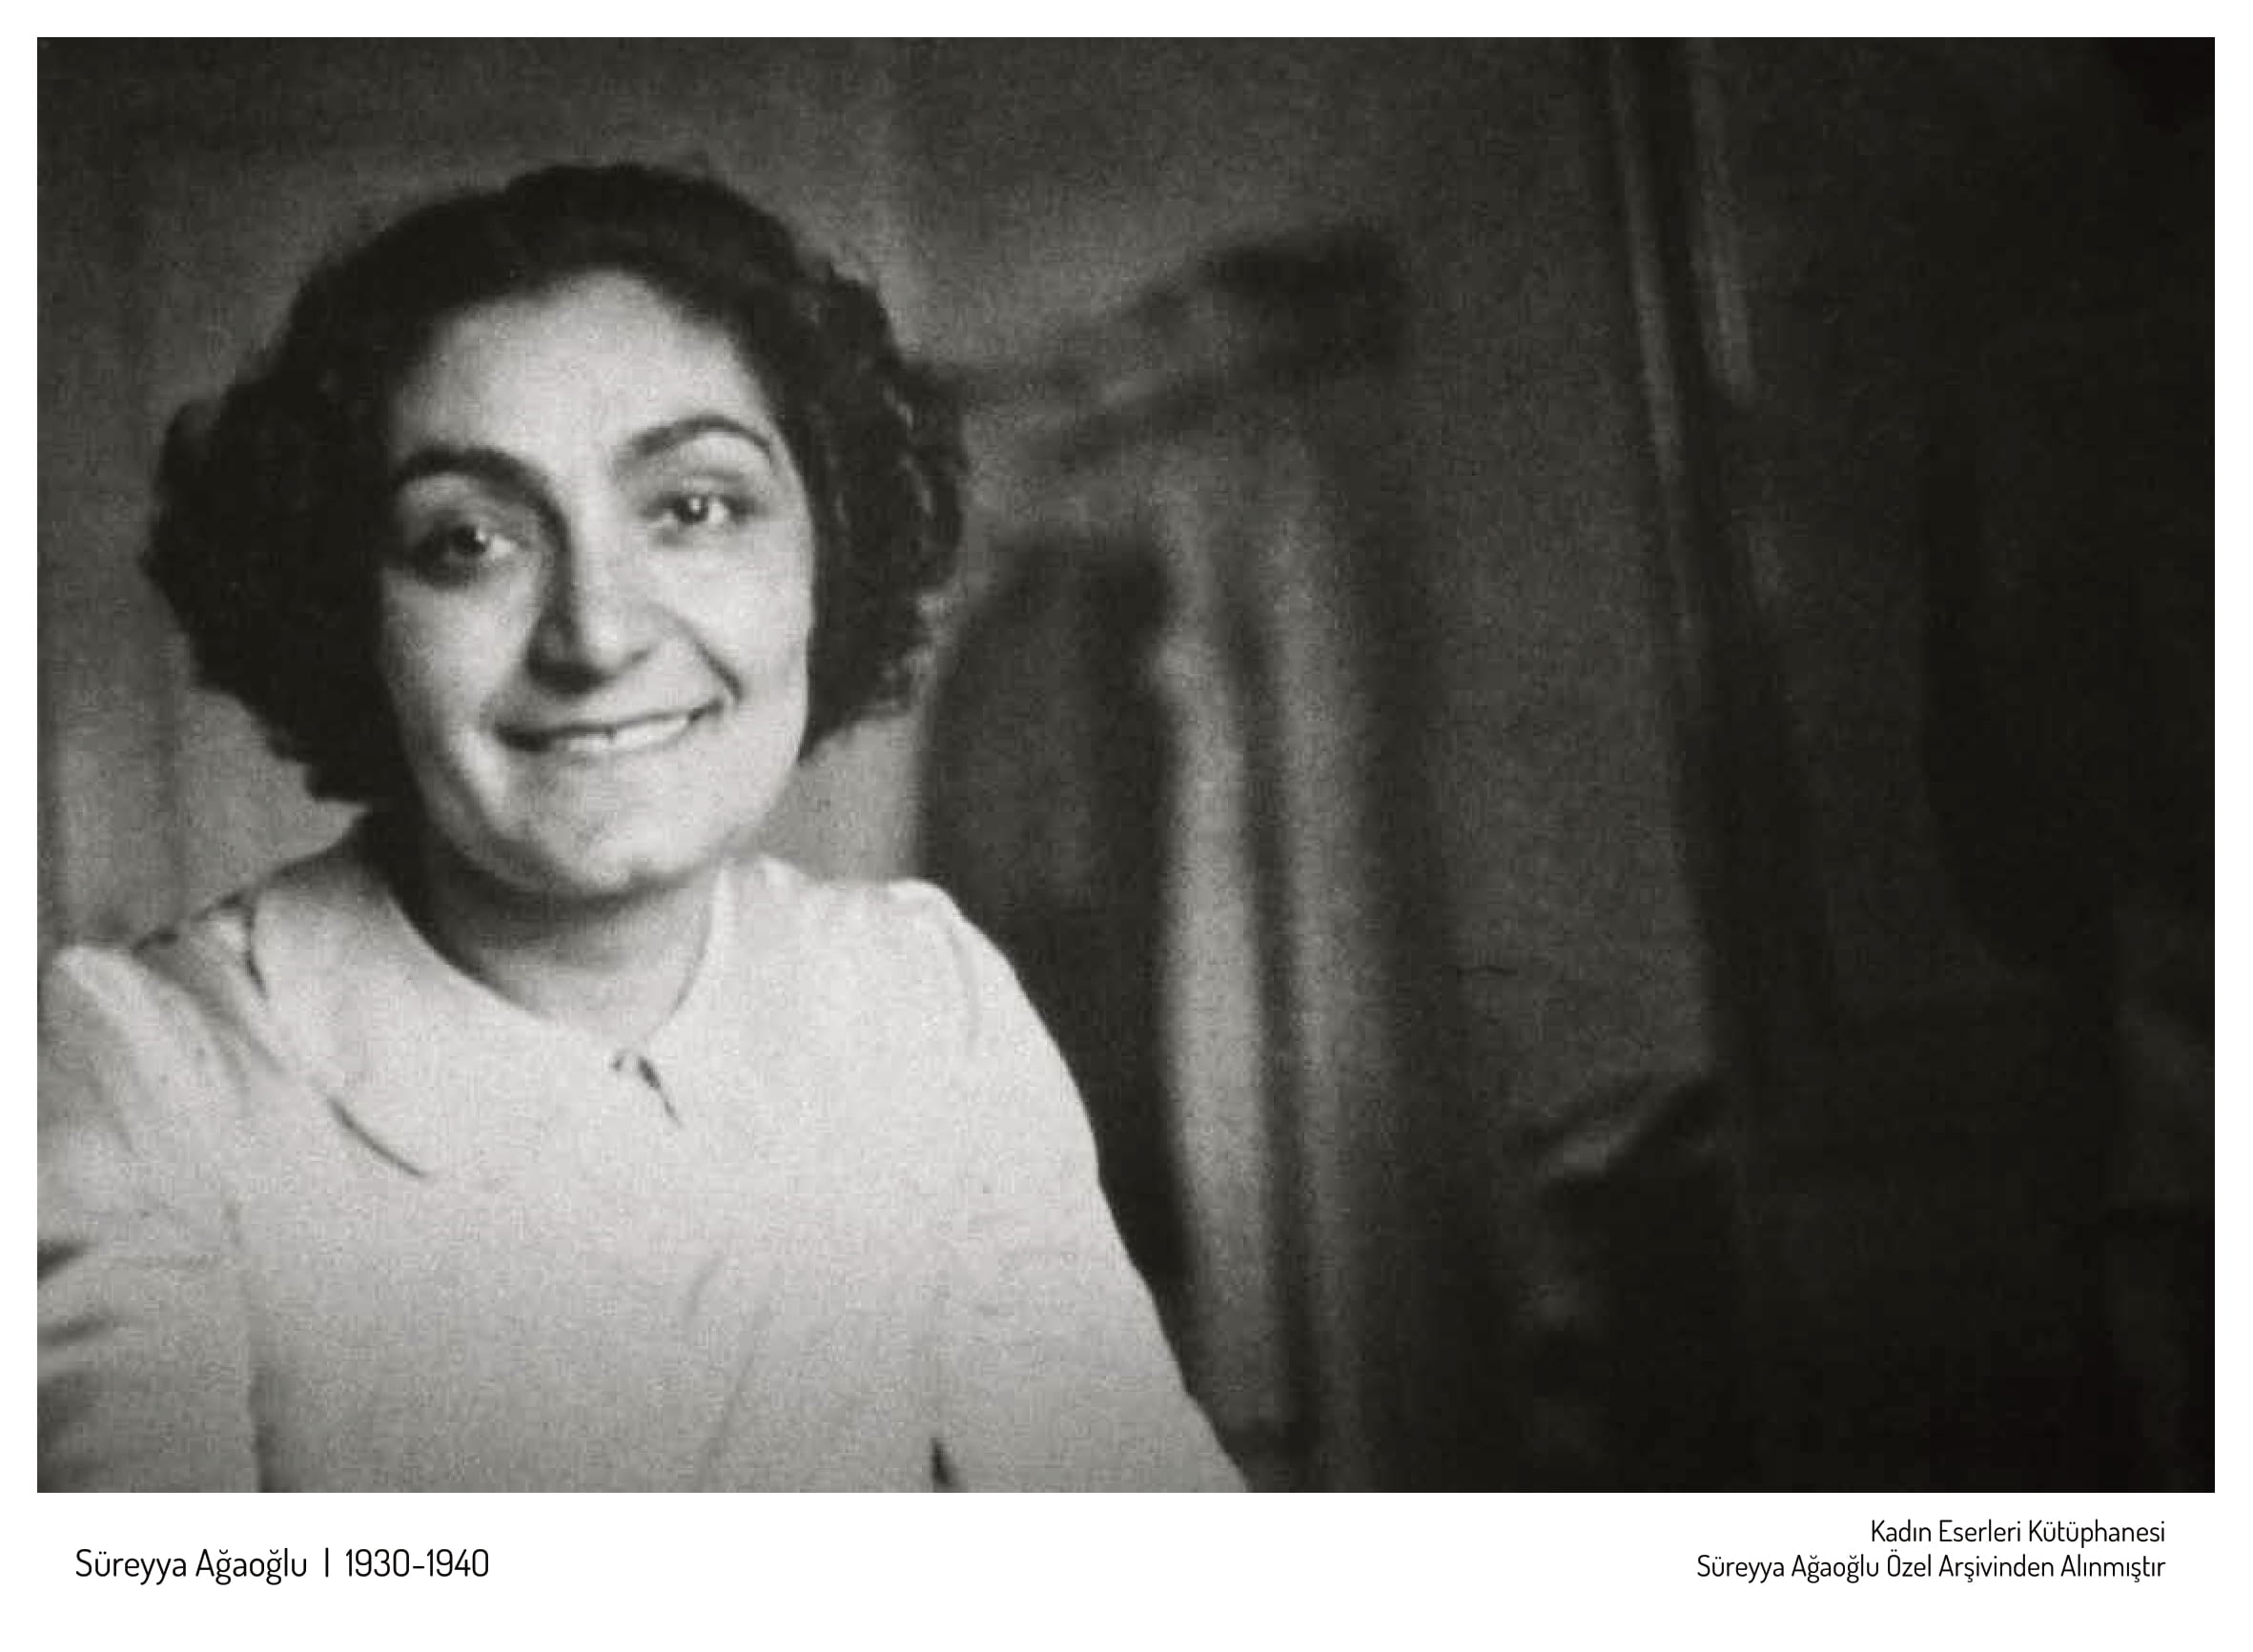 Süreyya Ağaoğlu ( 1930-1940)  Kadın Eserleri Kütüphanesi  ve Bilgi Merkezi Vakfı Süreyya Ağaoğlu Özel Arşivinden Alınmıştır.

